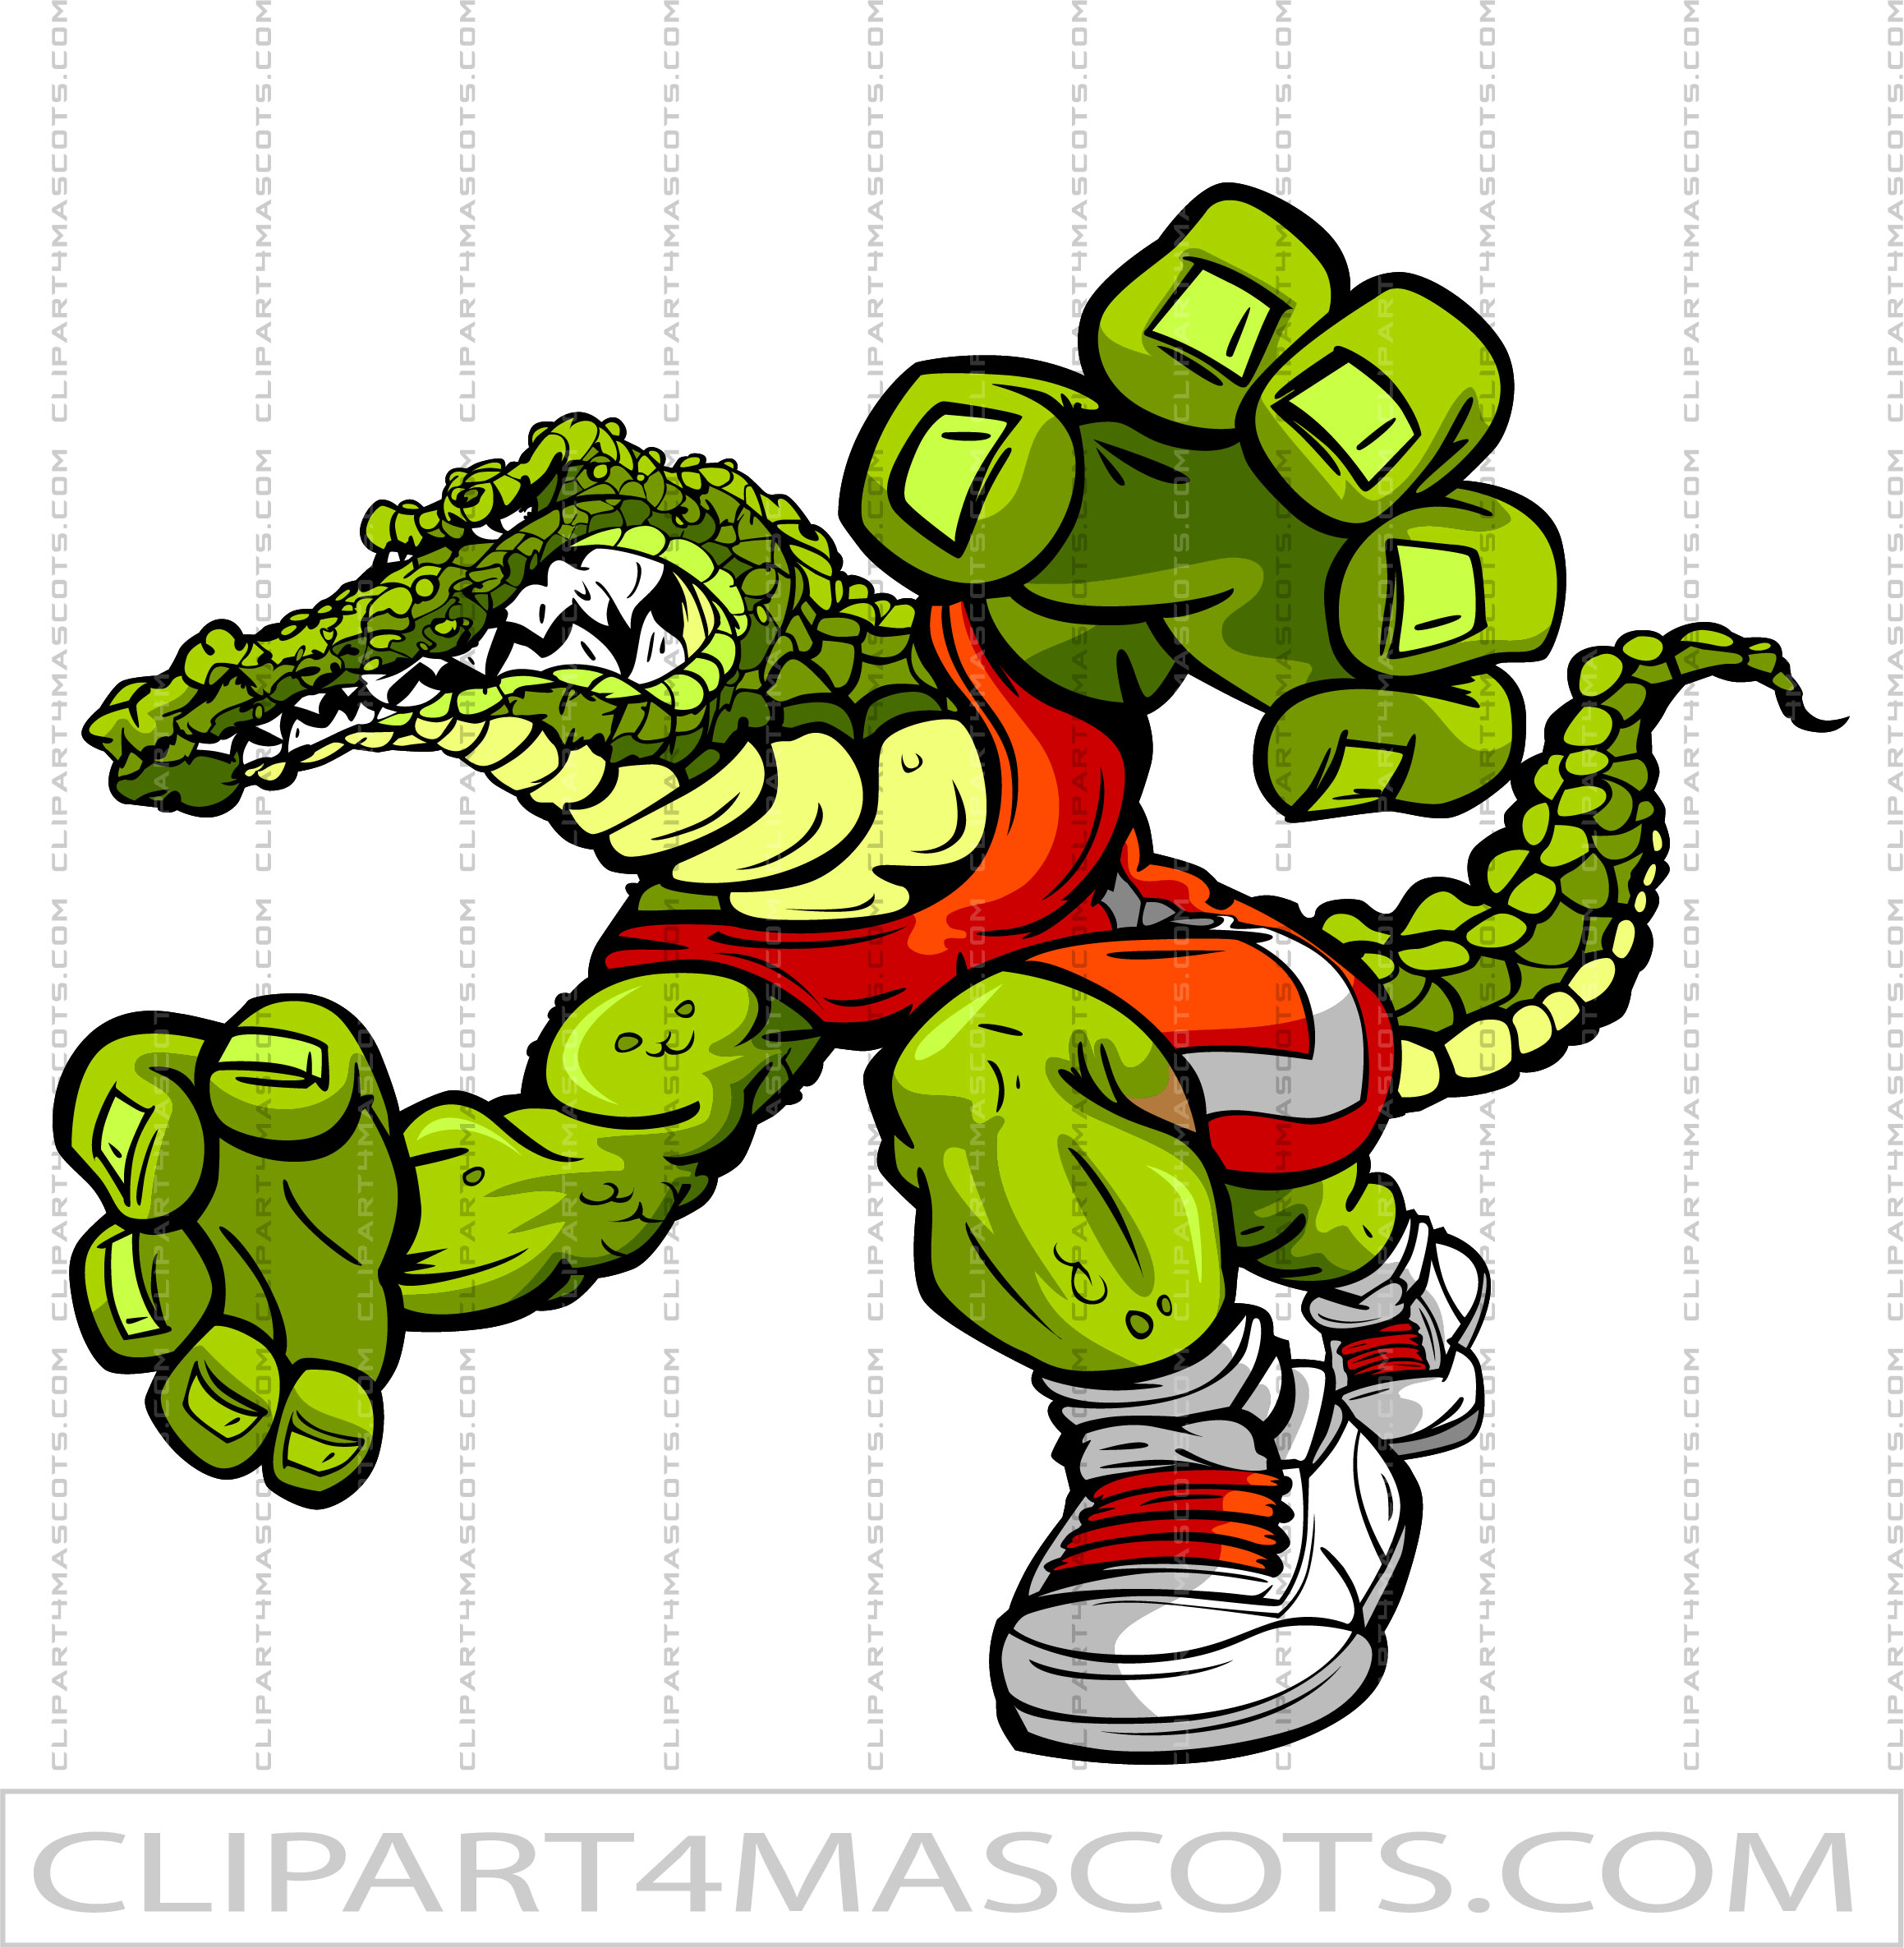 Alligator Wrestler Mascot